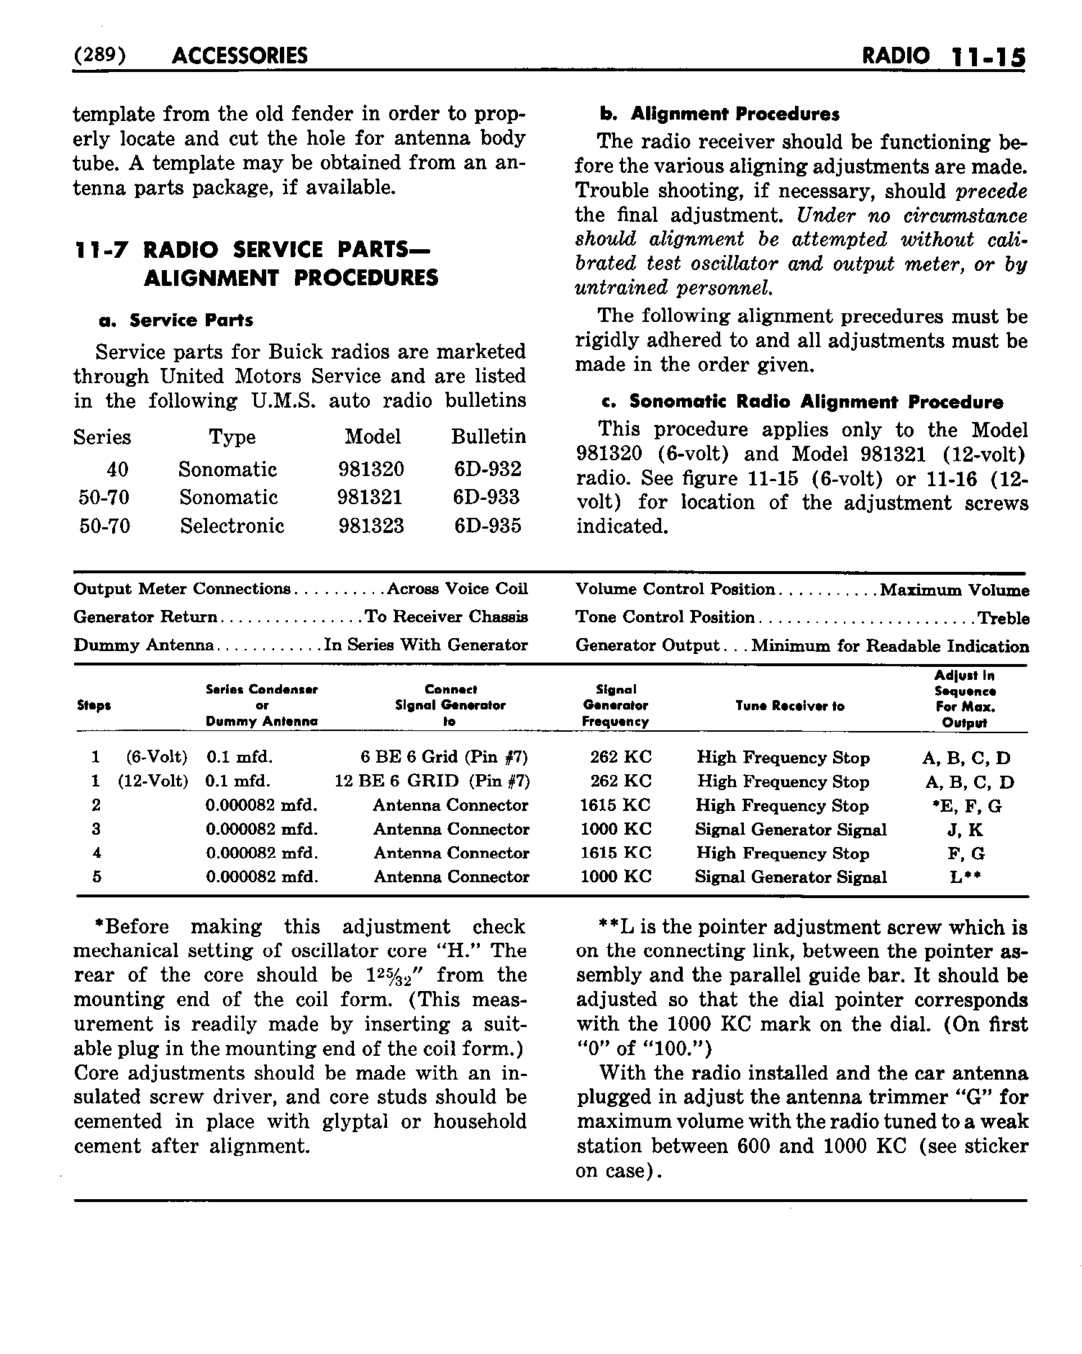 n_12 1953 Buick Shop Manual - Accessories-015-015.jpg